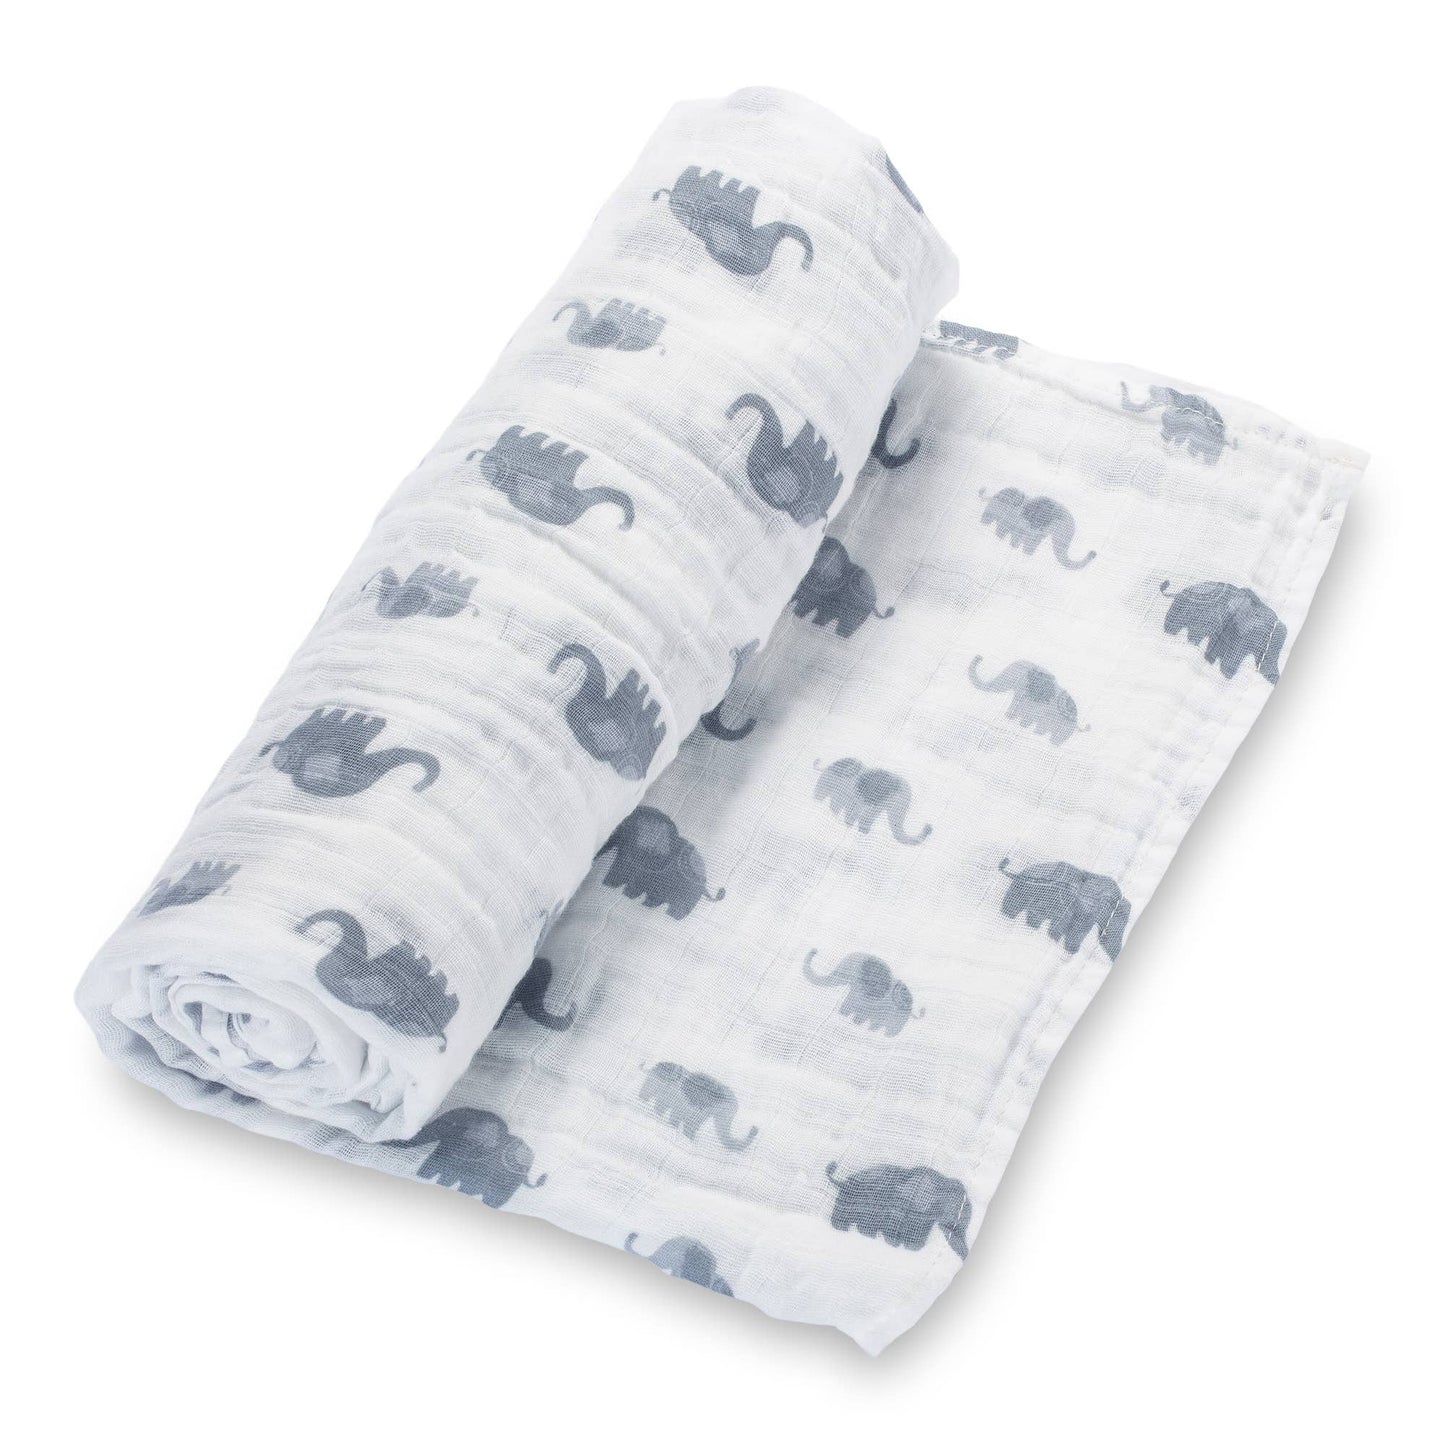 Elephantastic Baby Swaddle Blanket